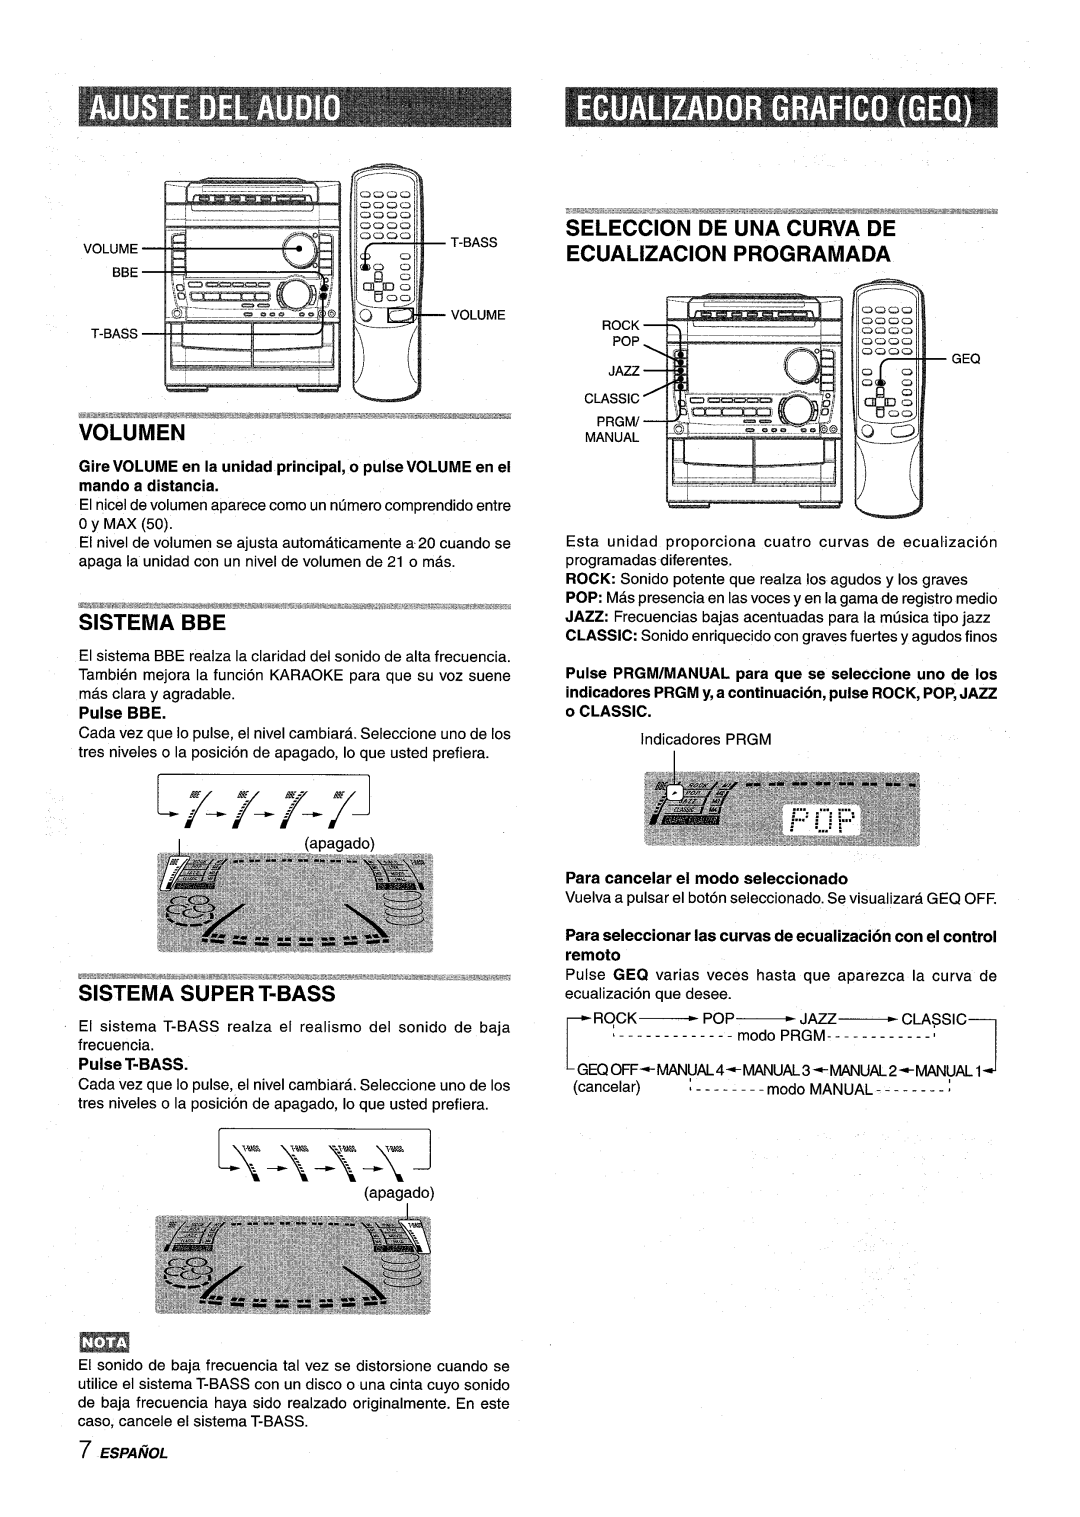 Sony NSX-A959 manual Volumen, Sistema Bbe, Para seleccionar Ias curvas de ecualizacion con el control remoto, Pulse BBE 